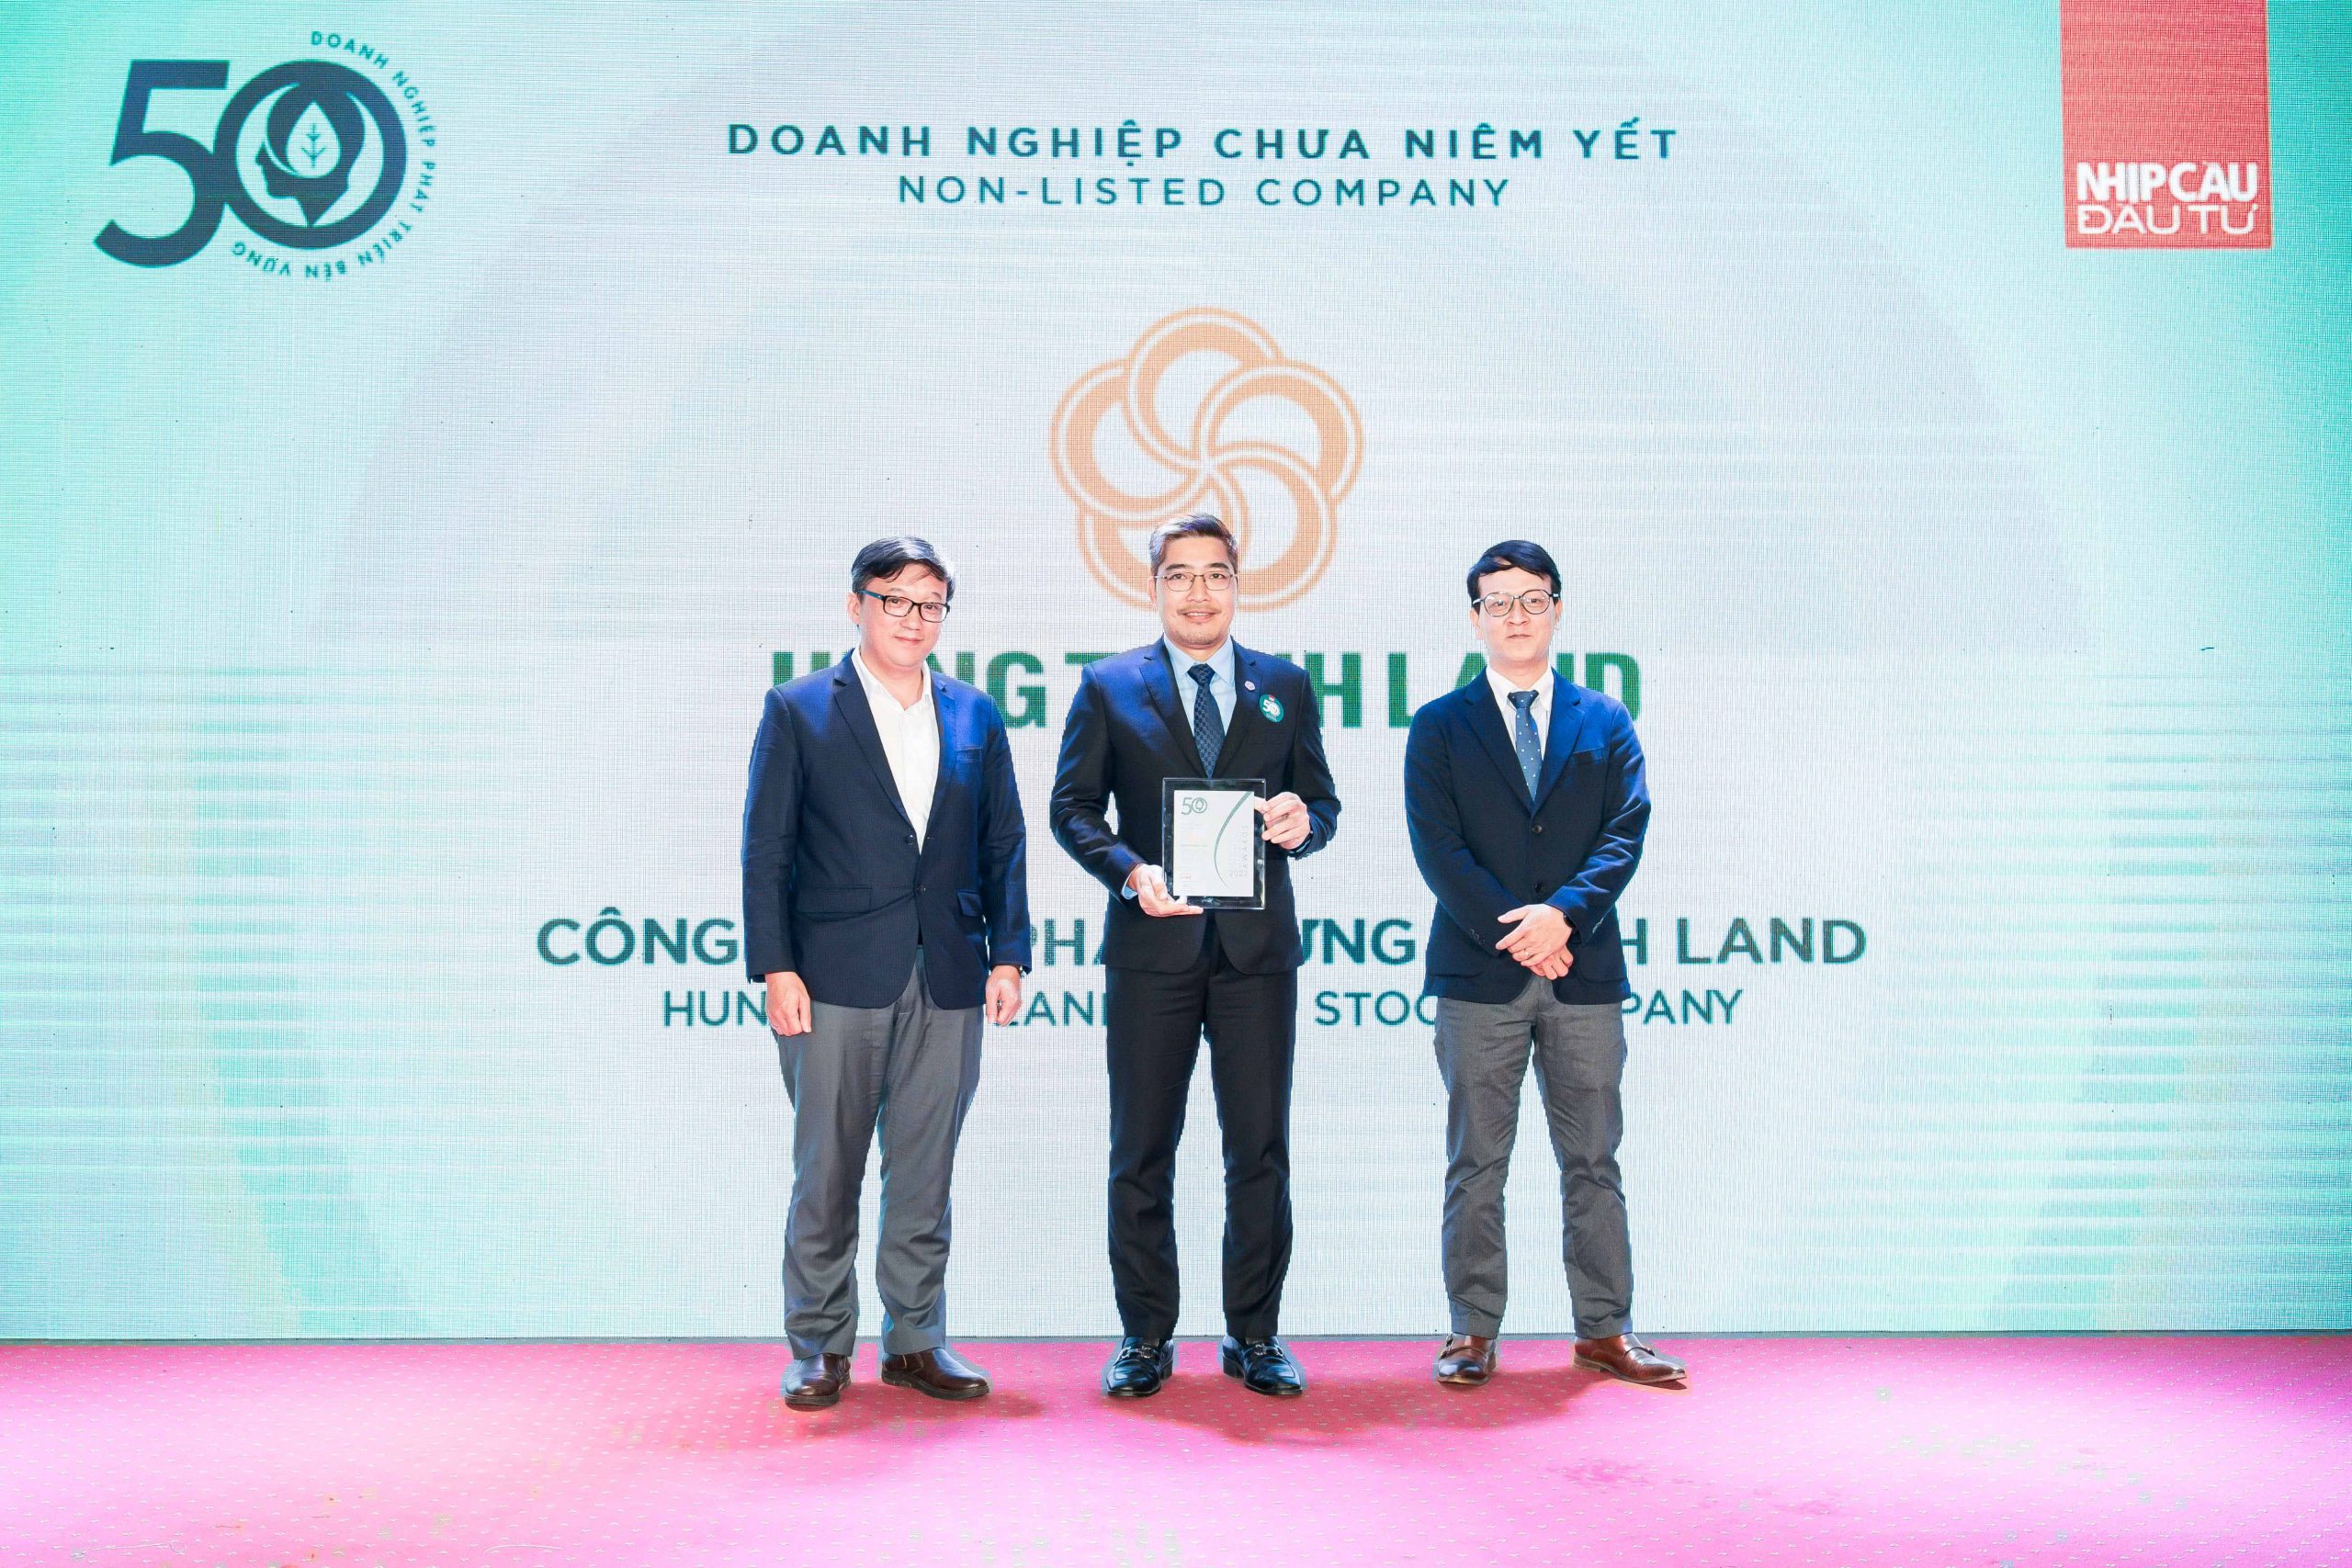 Ông Thiệu lê Bình Phó Tổng Giám đốc đại diện Hưng Thịnh Land nhận giải thưởng Top 50 doanh nghiệp phát triển bền vững.